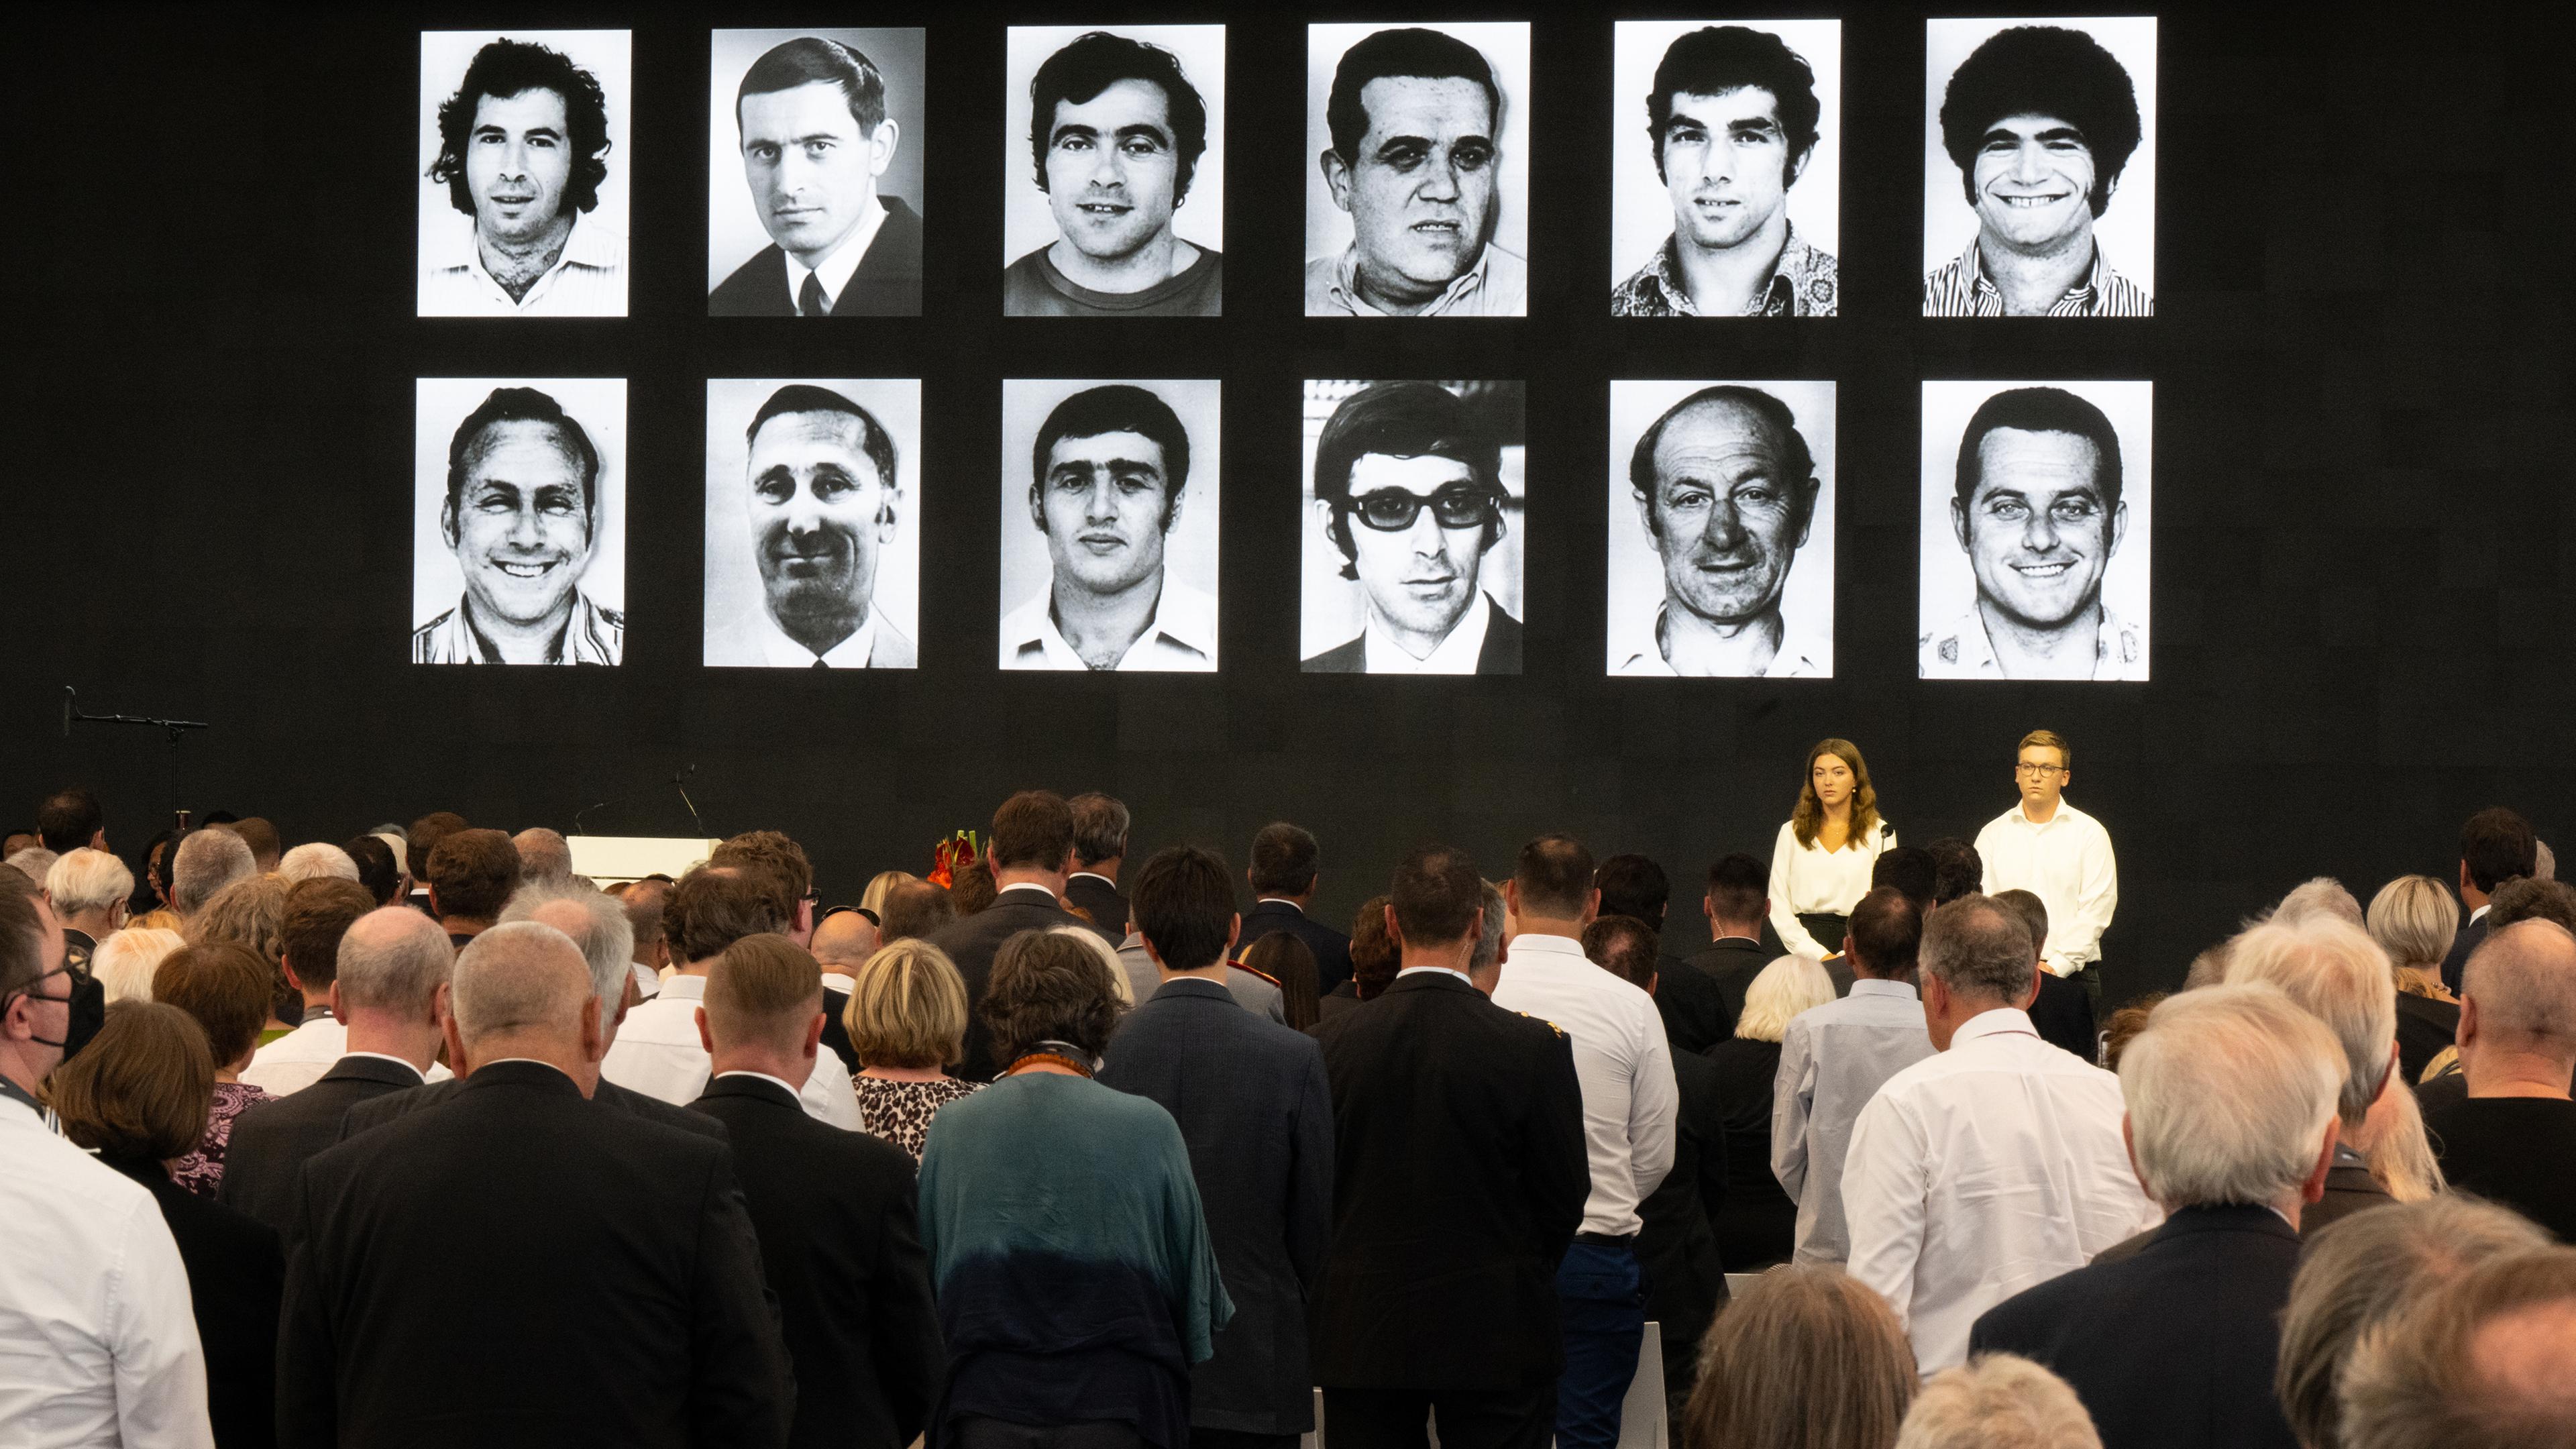 05.09.2022, Fürstenfeldbruck, Bayern: Auf der Gedenkveranstaltung zum 50. Jahrestags des Olypiaattentats 1972 in München, werden die Bilder der 12 Opfer auf einer Leinwand zu sehen